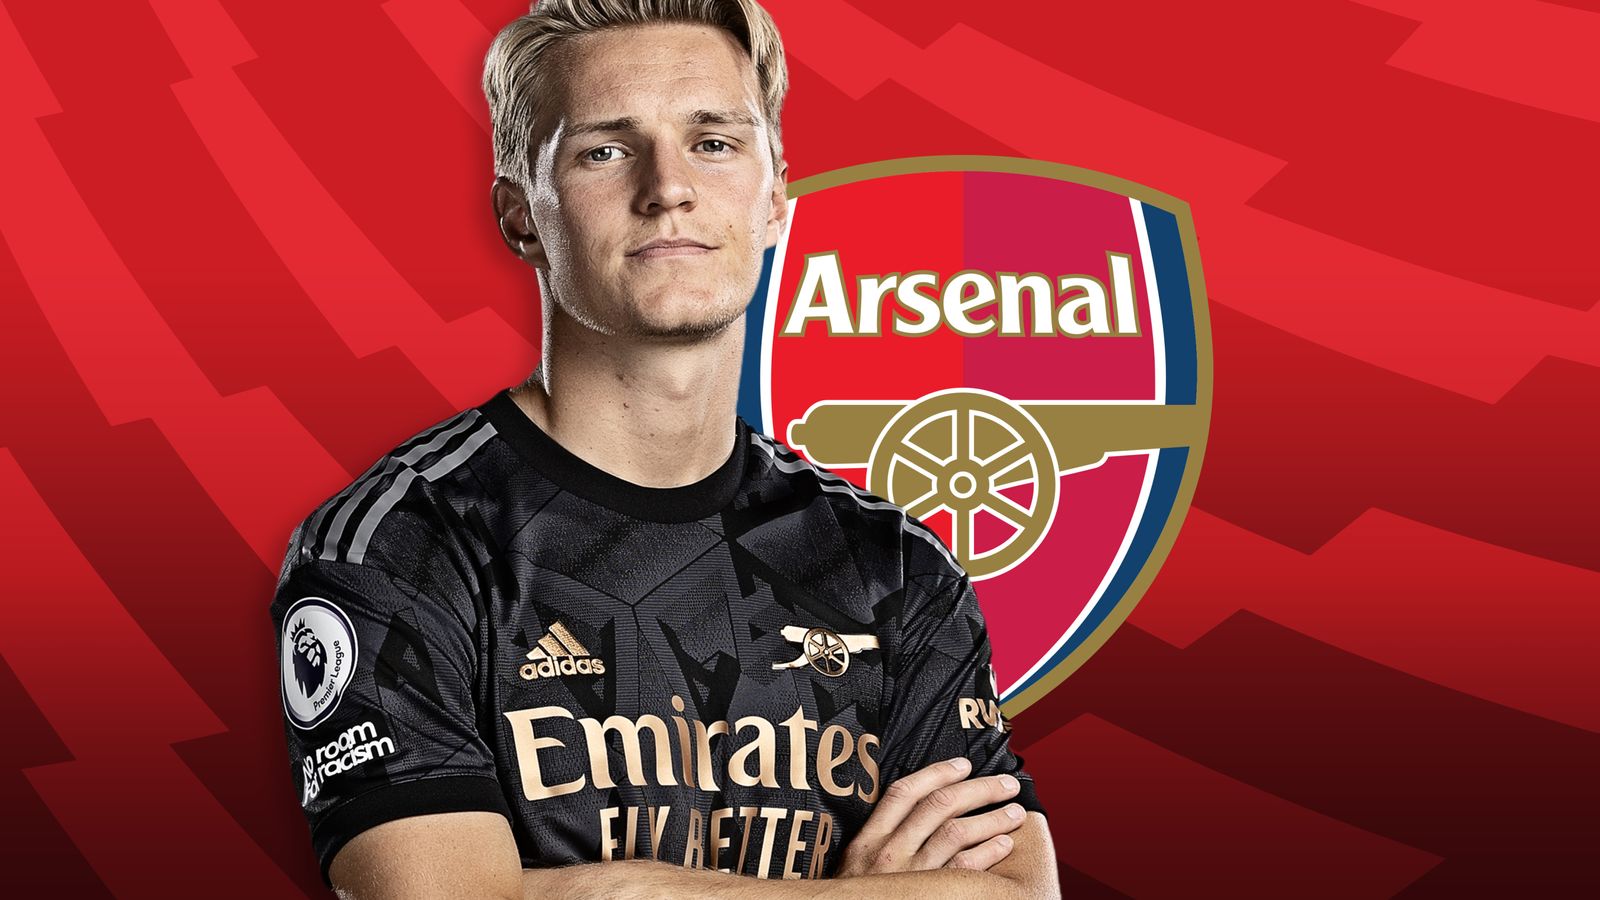 Exclusivo de Martin Odegaard: el Arsenal utilizará la decepción del título de la Premier League para volver más fuerte |  Noticias de futbol